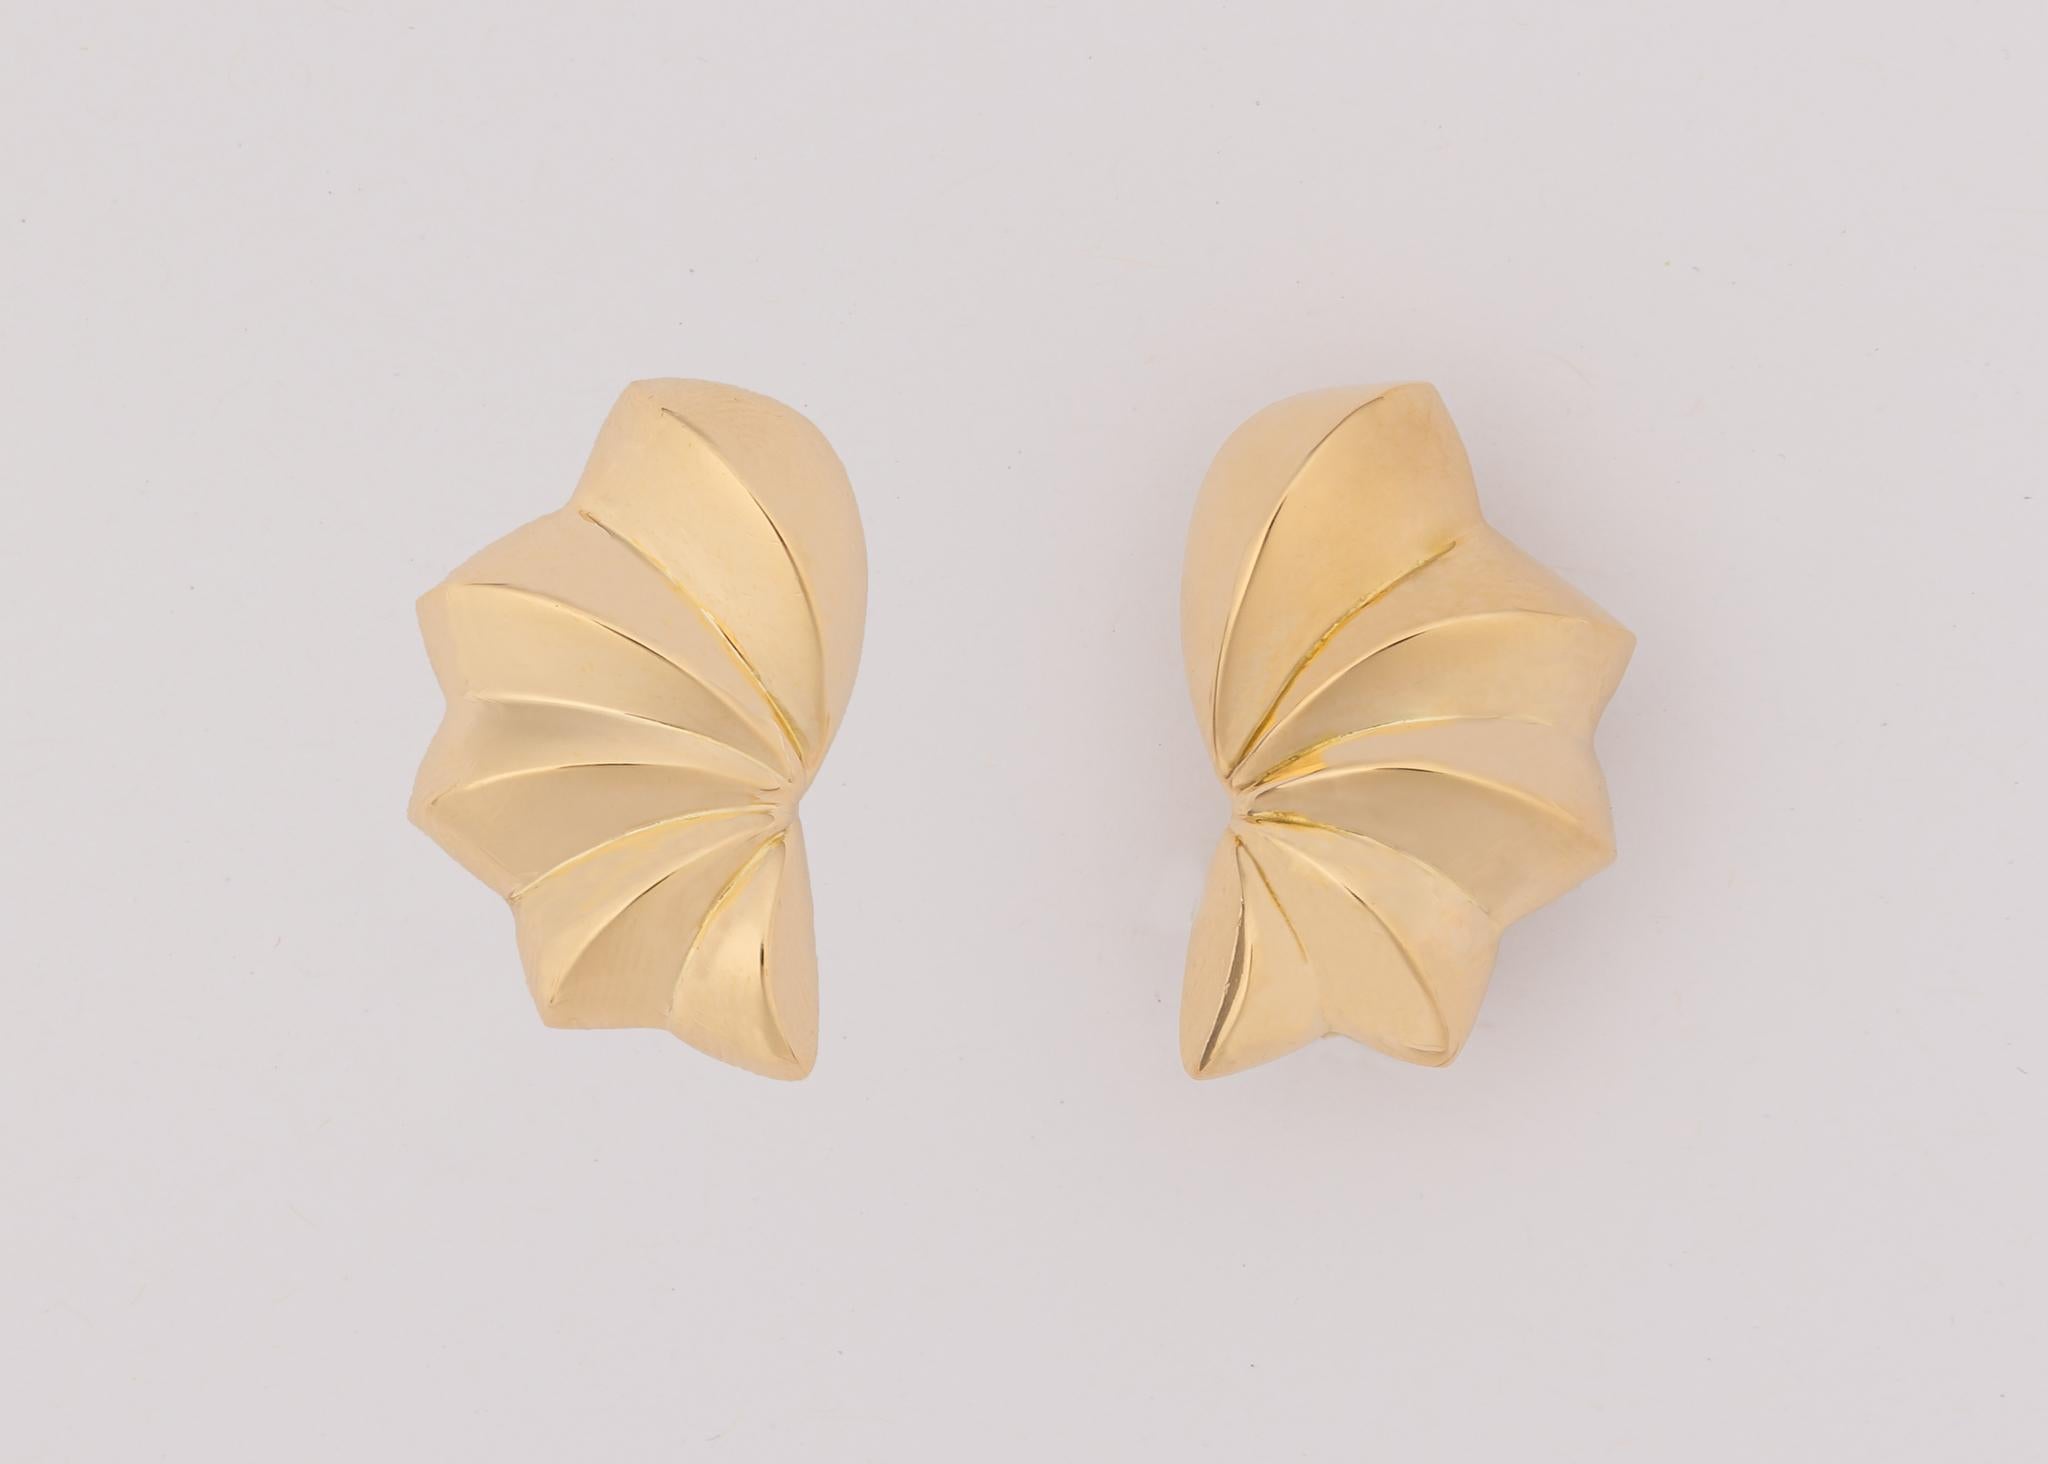 tiffany butterfly earrings